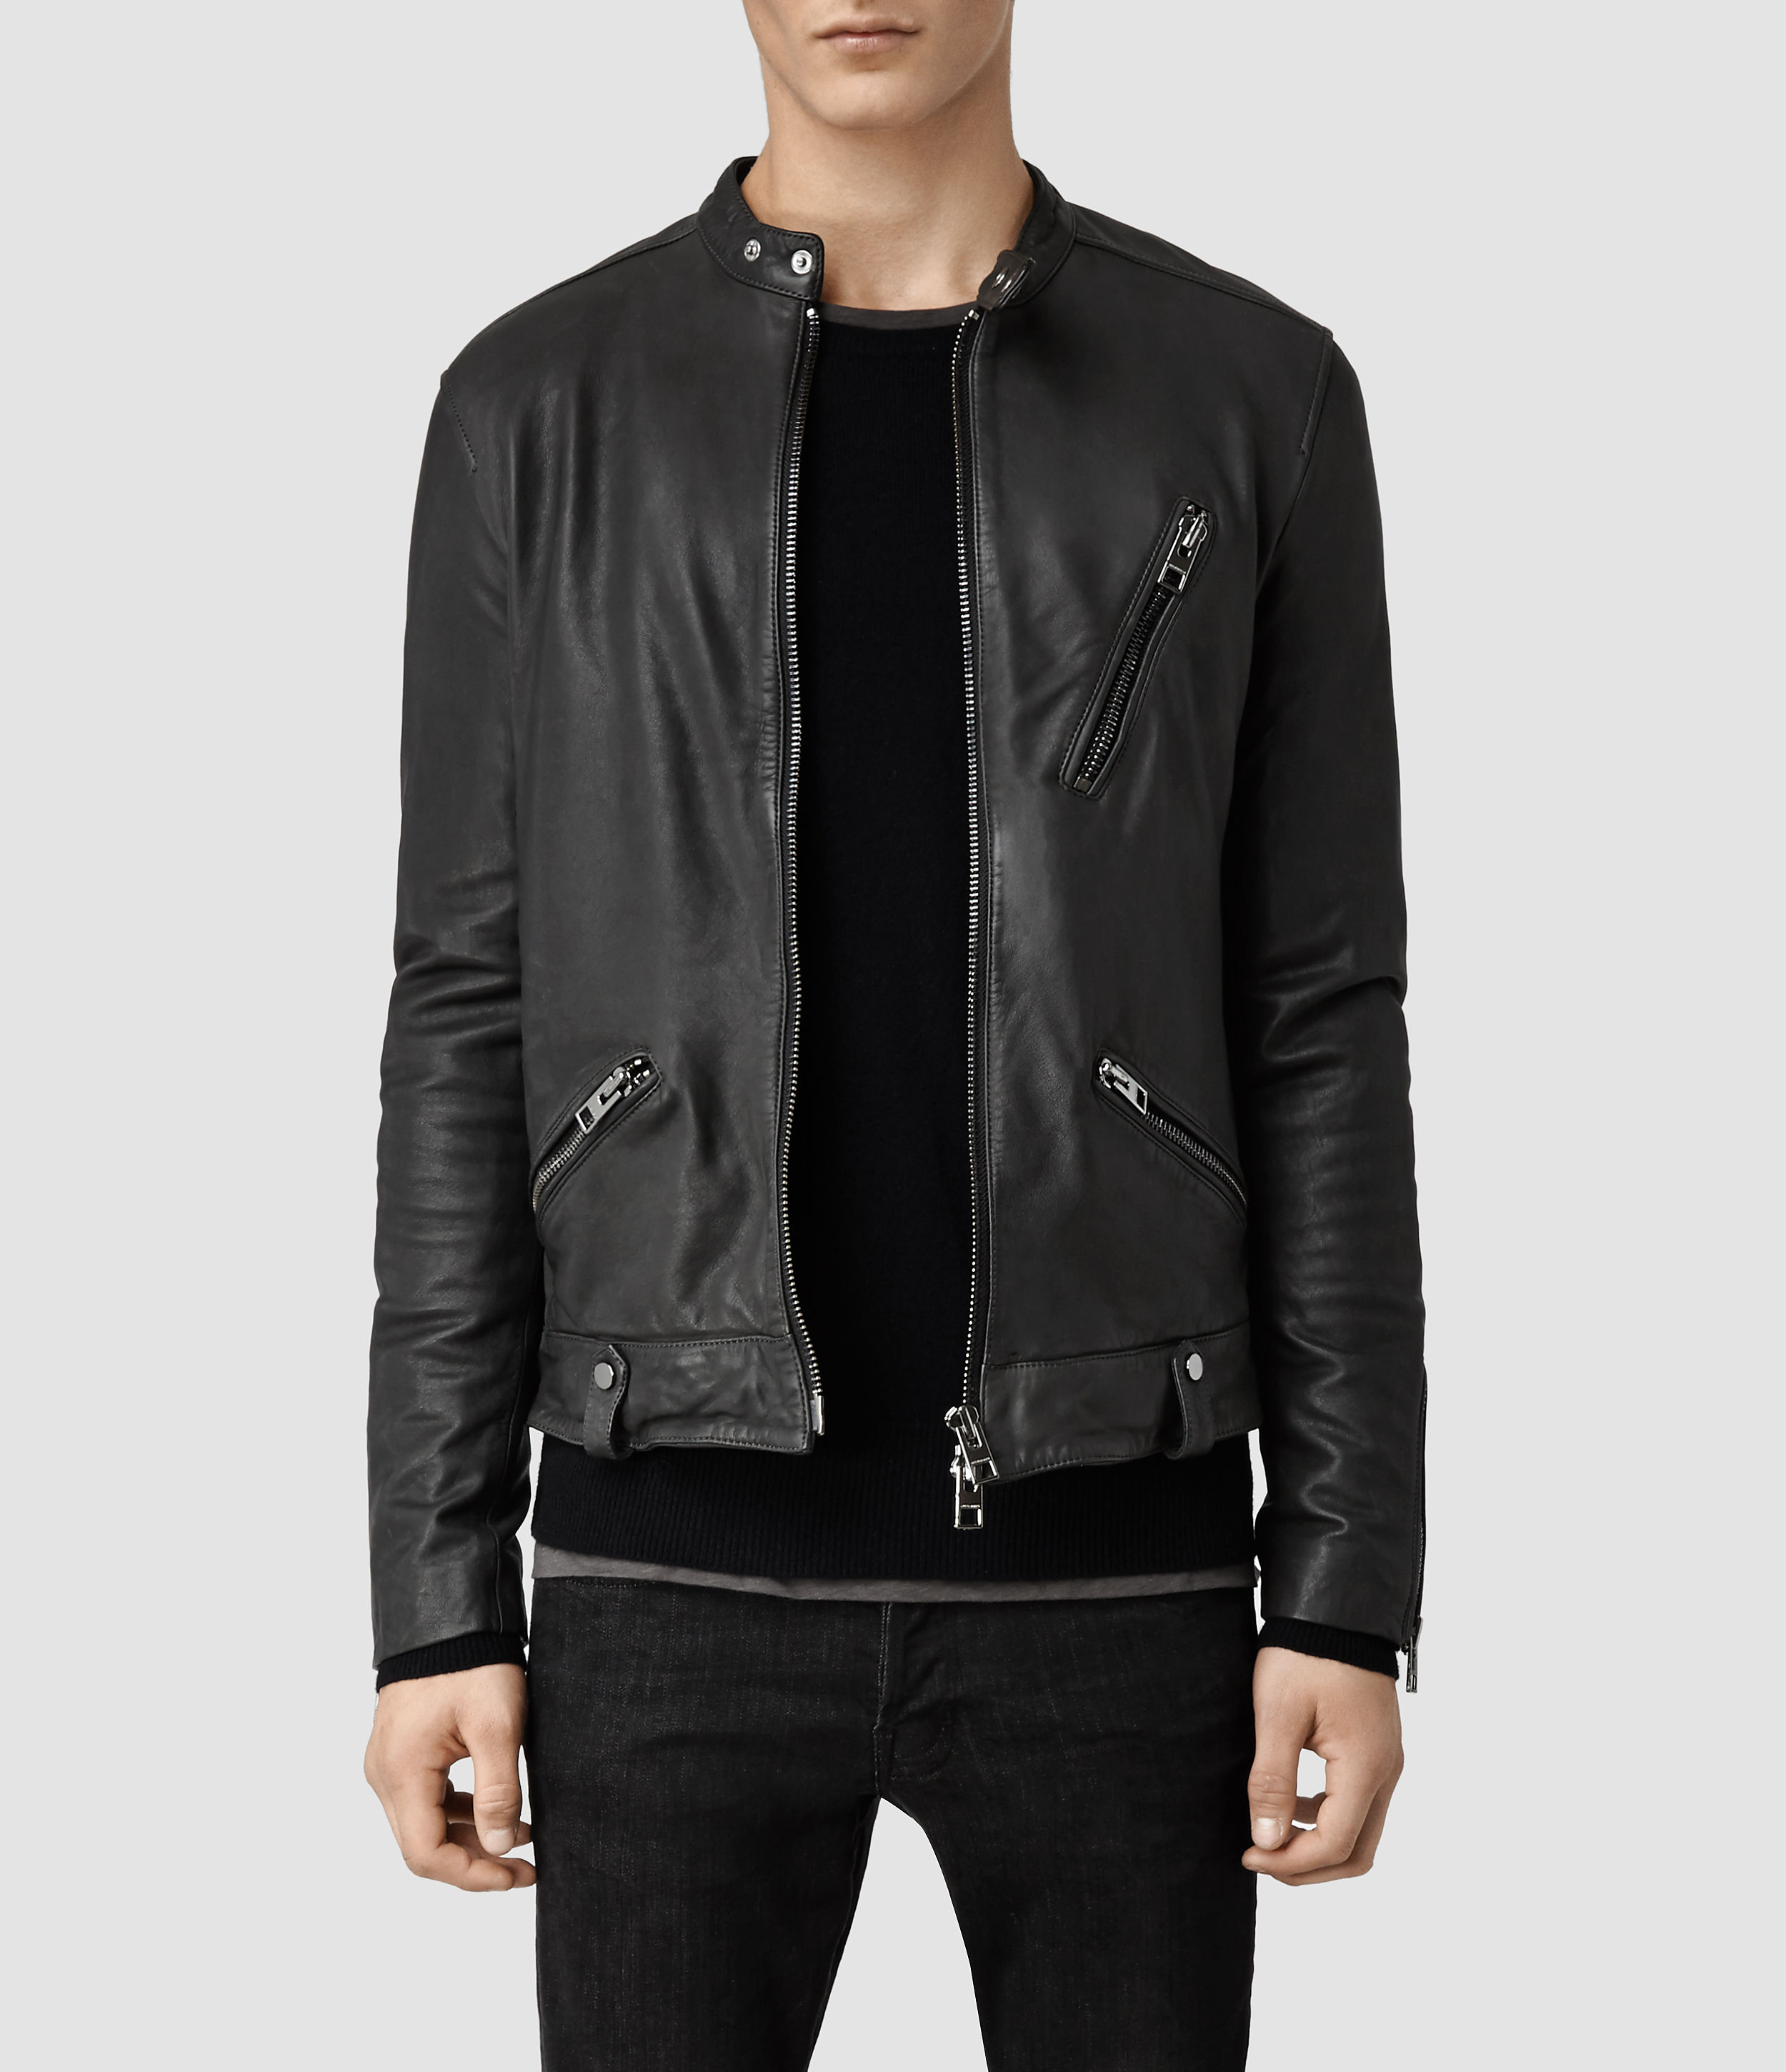 AllSaints Tide Leather Jacket in Slate (Gray) for Men - Lyst